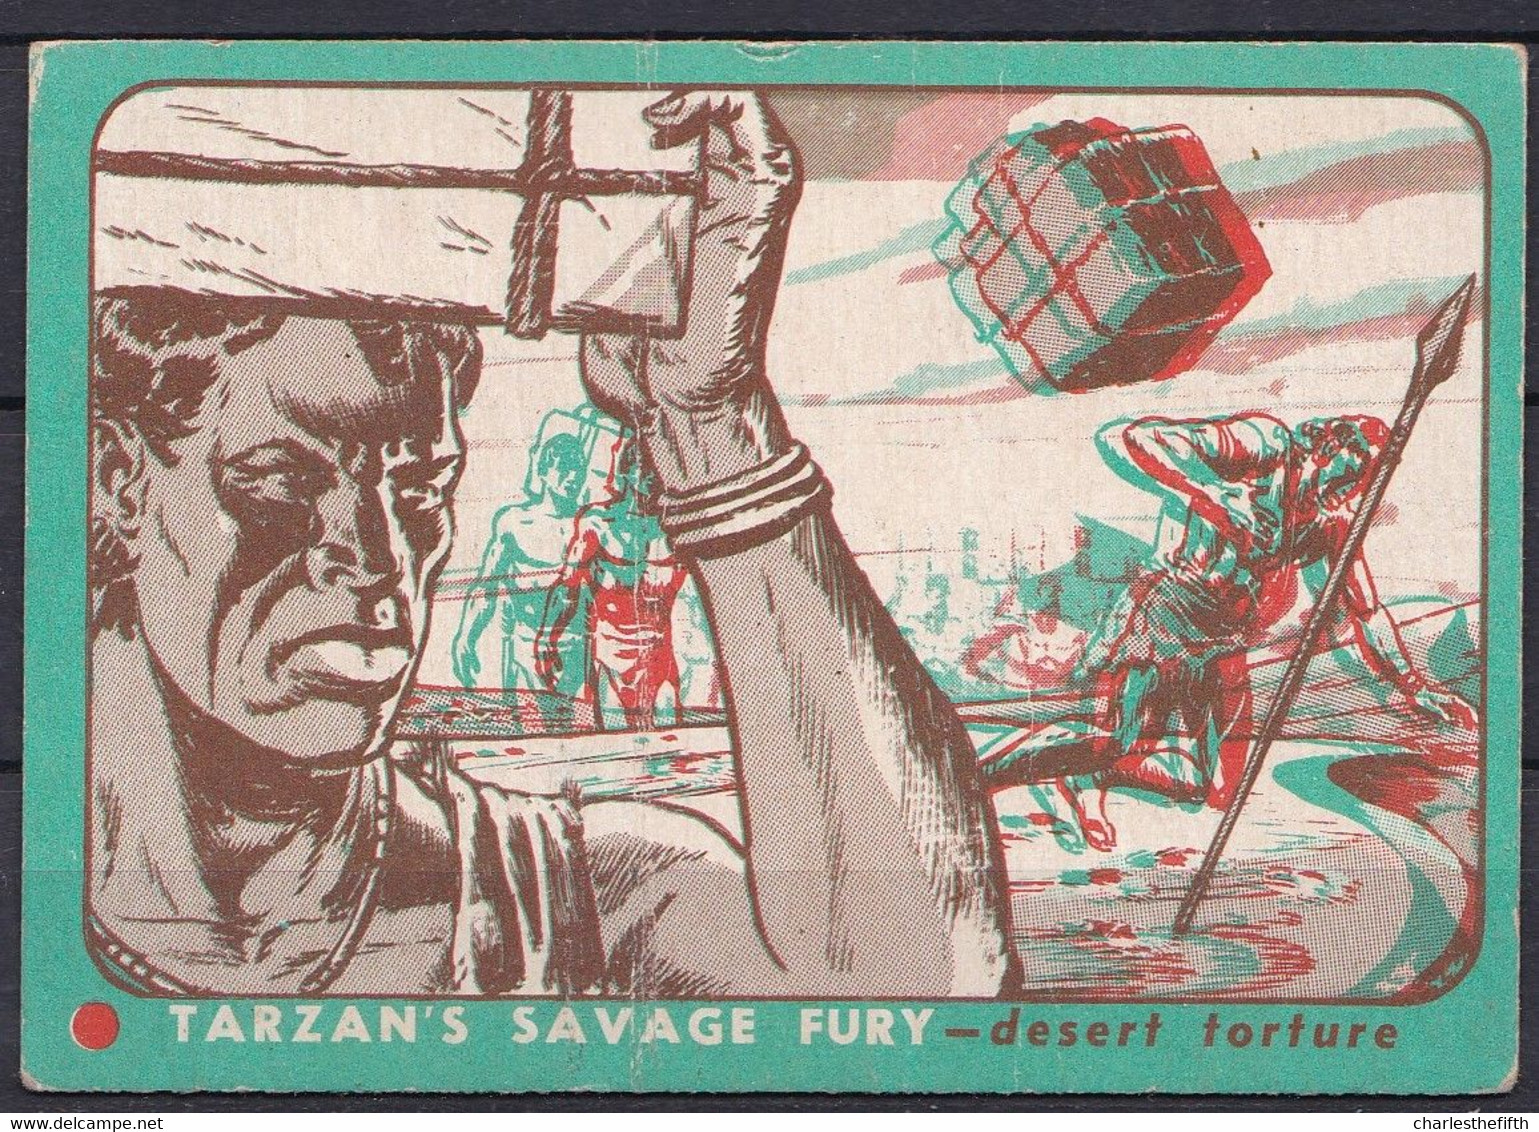 RARE !! 3D TRADING CARD - 1952 - TARZAN'S SAVAGE FURY  USA - RARES CARTES DE COLLECTION EN 3 D - SCENE 27 DESERT TORTURE - Autres & Non Classés